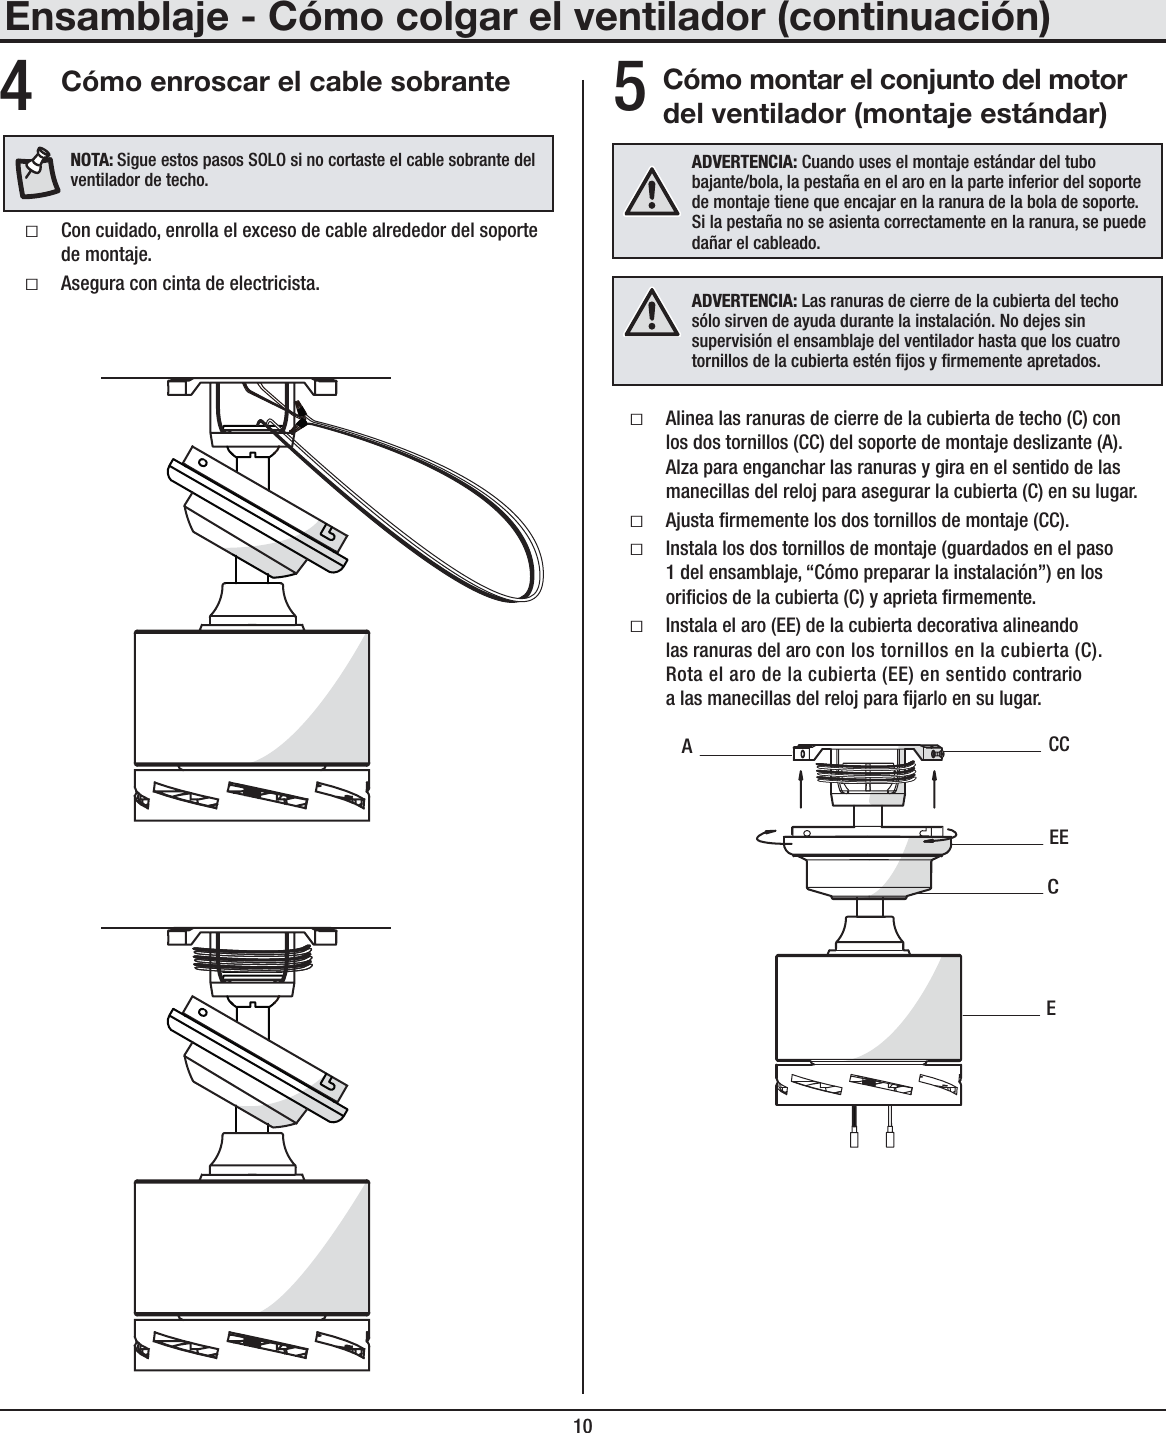 10Cómo montar el conjunto del motor del ventilador (montaje estándar)ƑAlinea las ranuras de cierre de la cubierta de techo (C) con los dos tornillos (CC) del soporte de montaje deslizante (A). Alza para enganchar las ranuras y gira en el sentido de las manecillas del reloj para asegurar la cubierta (C) en su lugar.ƑAjusta rmemente los dos tornillos de montaje (CC).ƑInstala los dos tornillos de montaje (guardados en el paso 1 del ensamblaje, “Cómo preparar la instalación”) en los oricios de la cubierta (C) y aprieta rmemente.ƑInstala el aro (EE) de la cubierta decorativa alineando las ranuras del aro con los tornillos en la cubierta (C). Rota el aro de la cubierta (EE) en sentido contrario a las manecillas del reloj para jarlo en su lugar.ADVERTENCIA: Cuando uses el montaje estándar del tubo bajante/bola, la pestaña en el aro en la parte inferior del soporte de montaje tiene que encajar en la ranura de la bola de soporte. Si la pestaña no se asienta correctamente en la ranura, se puede dañar el cableado.ECCCEEAEnsamblaje - Cómo colgar el ventilador (continuación)5Cómo enroscar el cable sobranteƑCon cuidado, enrolla el exceso de cable alrededor del soporte de montaje.ƑAsegura con cinta de electricista.4NOTA: Sigue estos pasos SOLO si no cortaste el cable sobrante del ventilador de techo.ADVERTENCIA: Las ranuras de cierre de la cubierta del techo sólo sirven de ayuda durante la instalación. No dejes sin supervisión el ensamblaje del ventilador hasta que los cuatro tornillos de la cubierta estén jos y rmemente apretados.